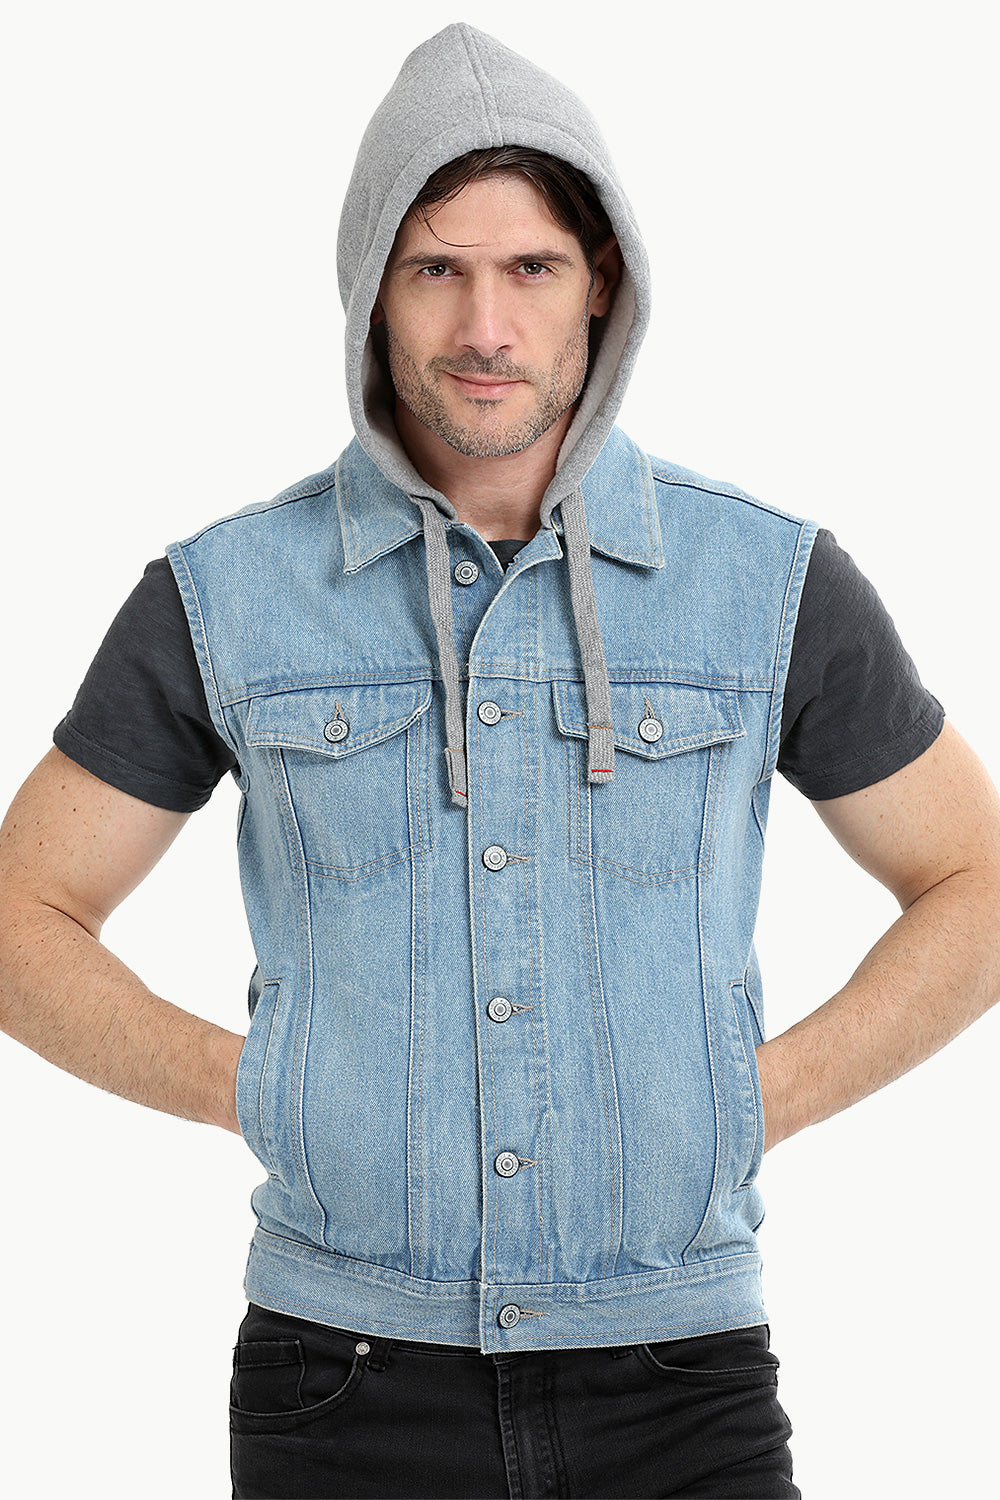 Hoodie Cowboy Sleeveless Solid Denim Jean Vest Men Casual Hip Hop  Motorcycle Jeans Slim Fit Waistcoat